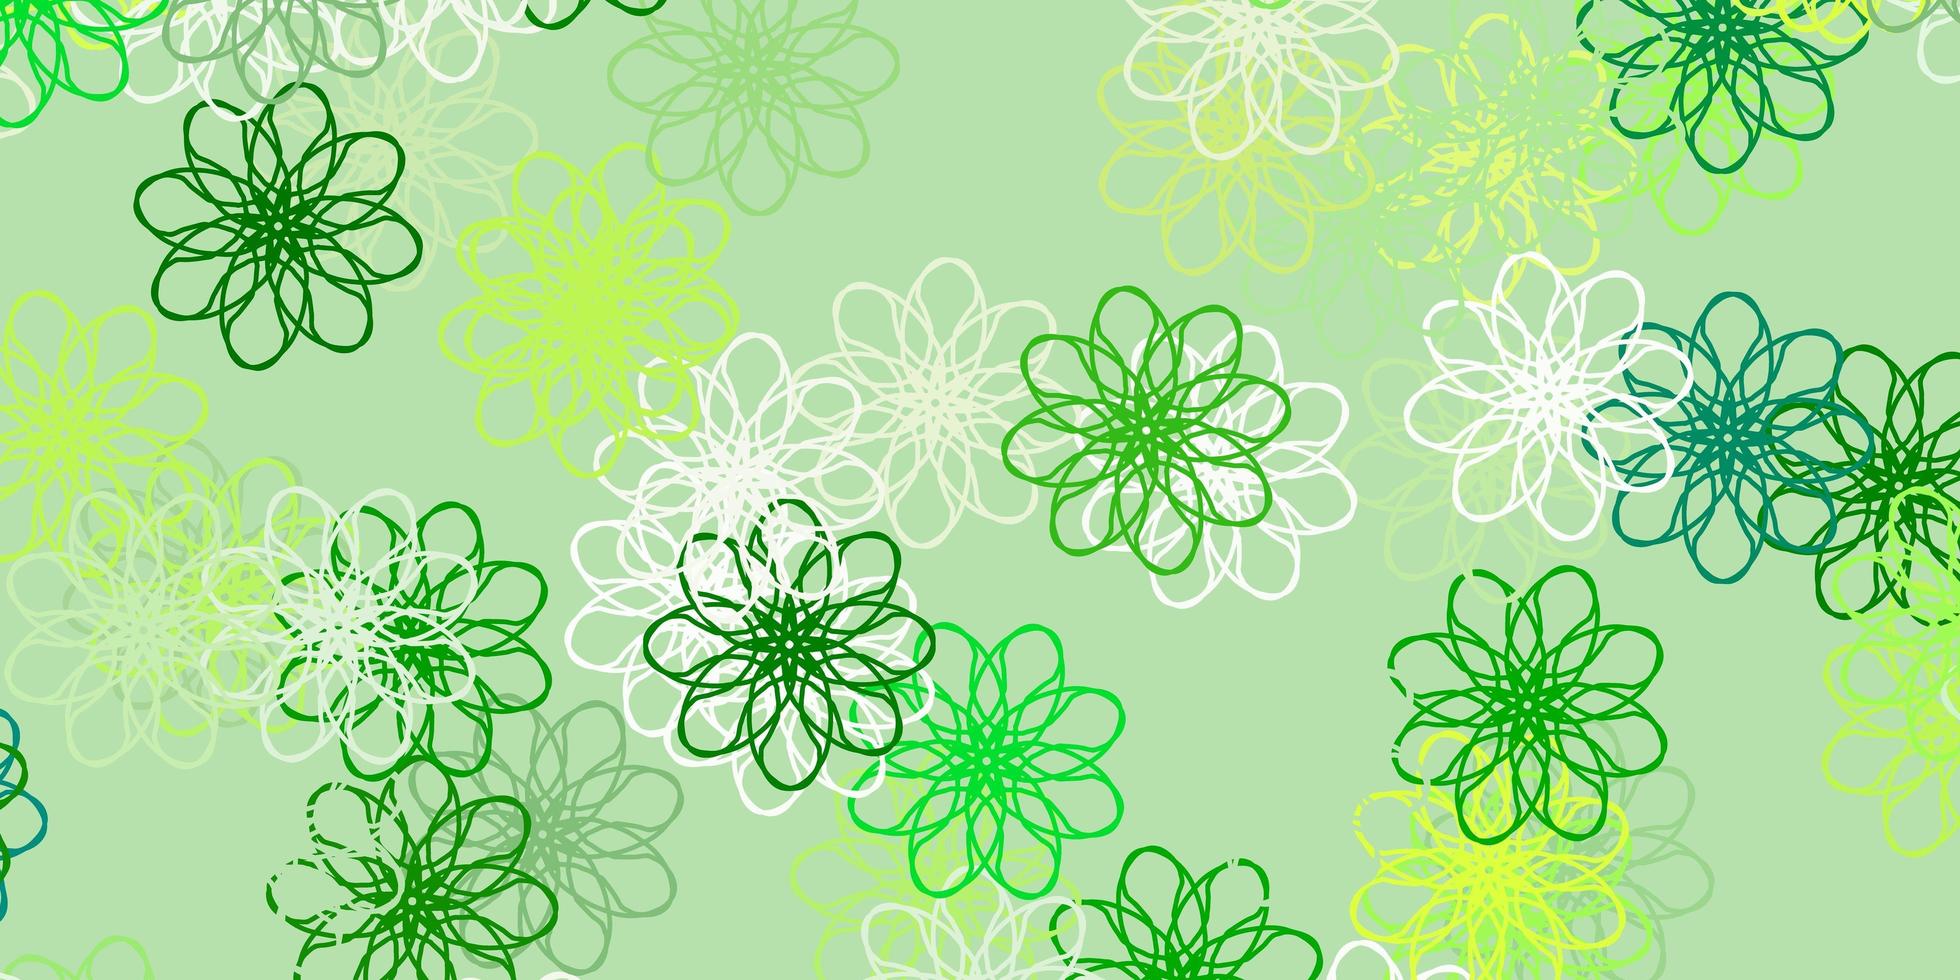 modèle de doodle vecteur vert clair, jaune avec des fleurs.